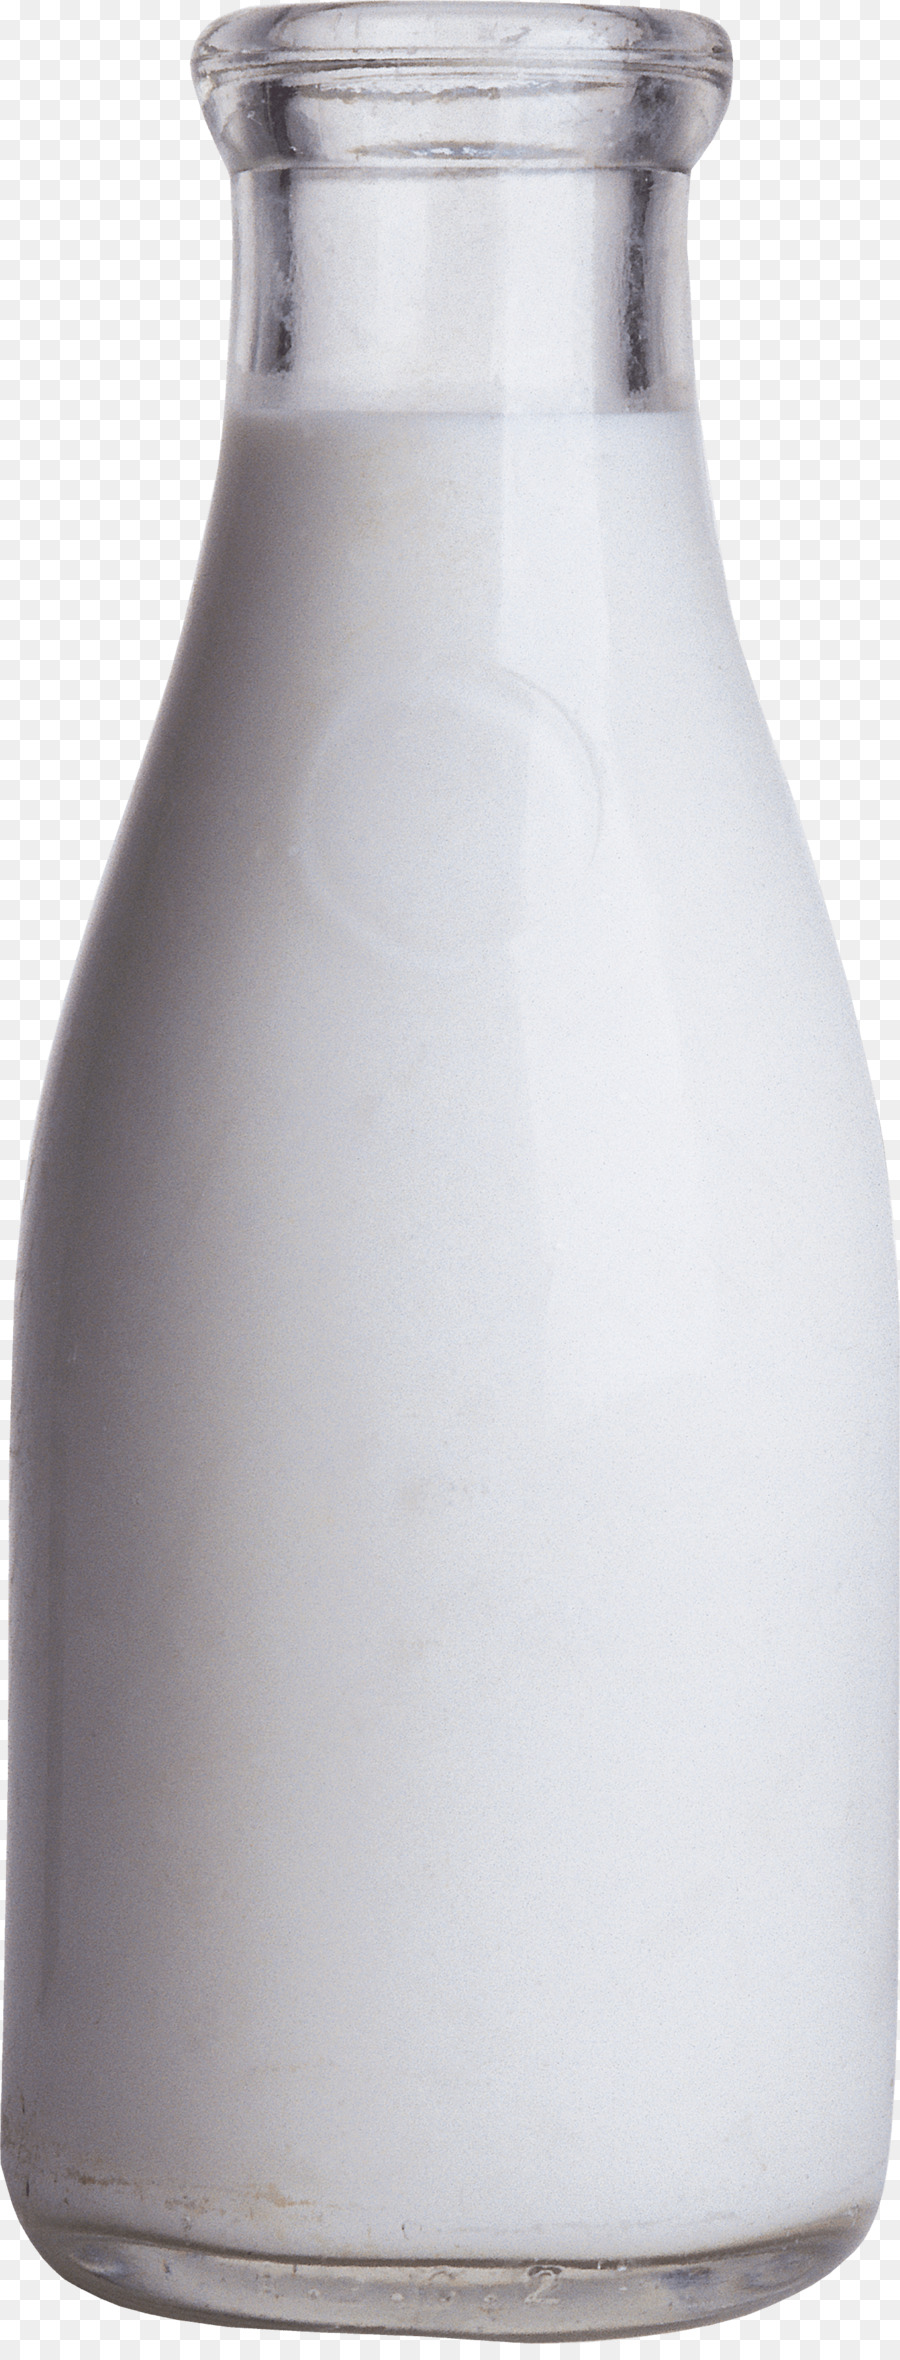 Bottiglia di latte Clip art - bottiglia di vetro